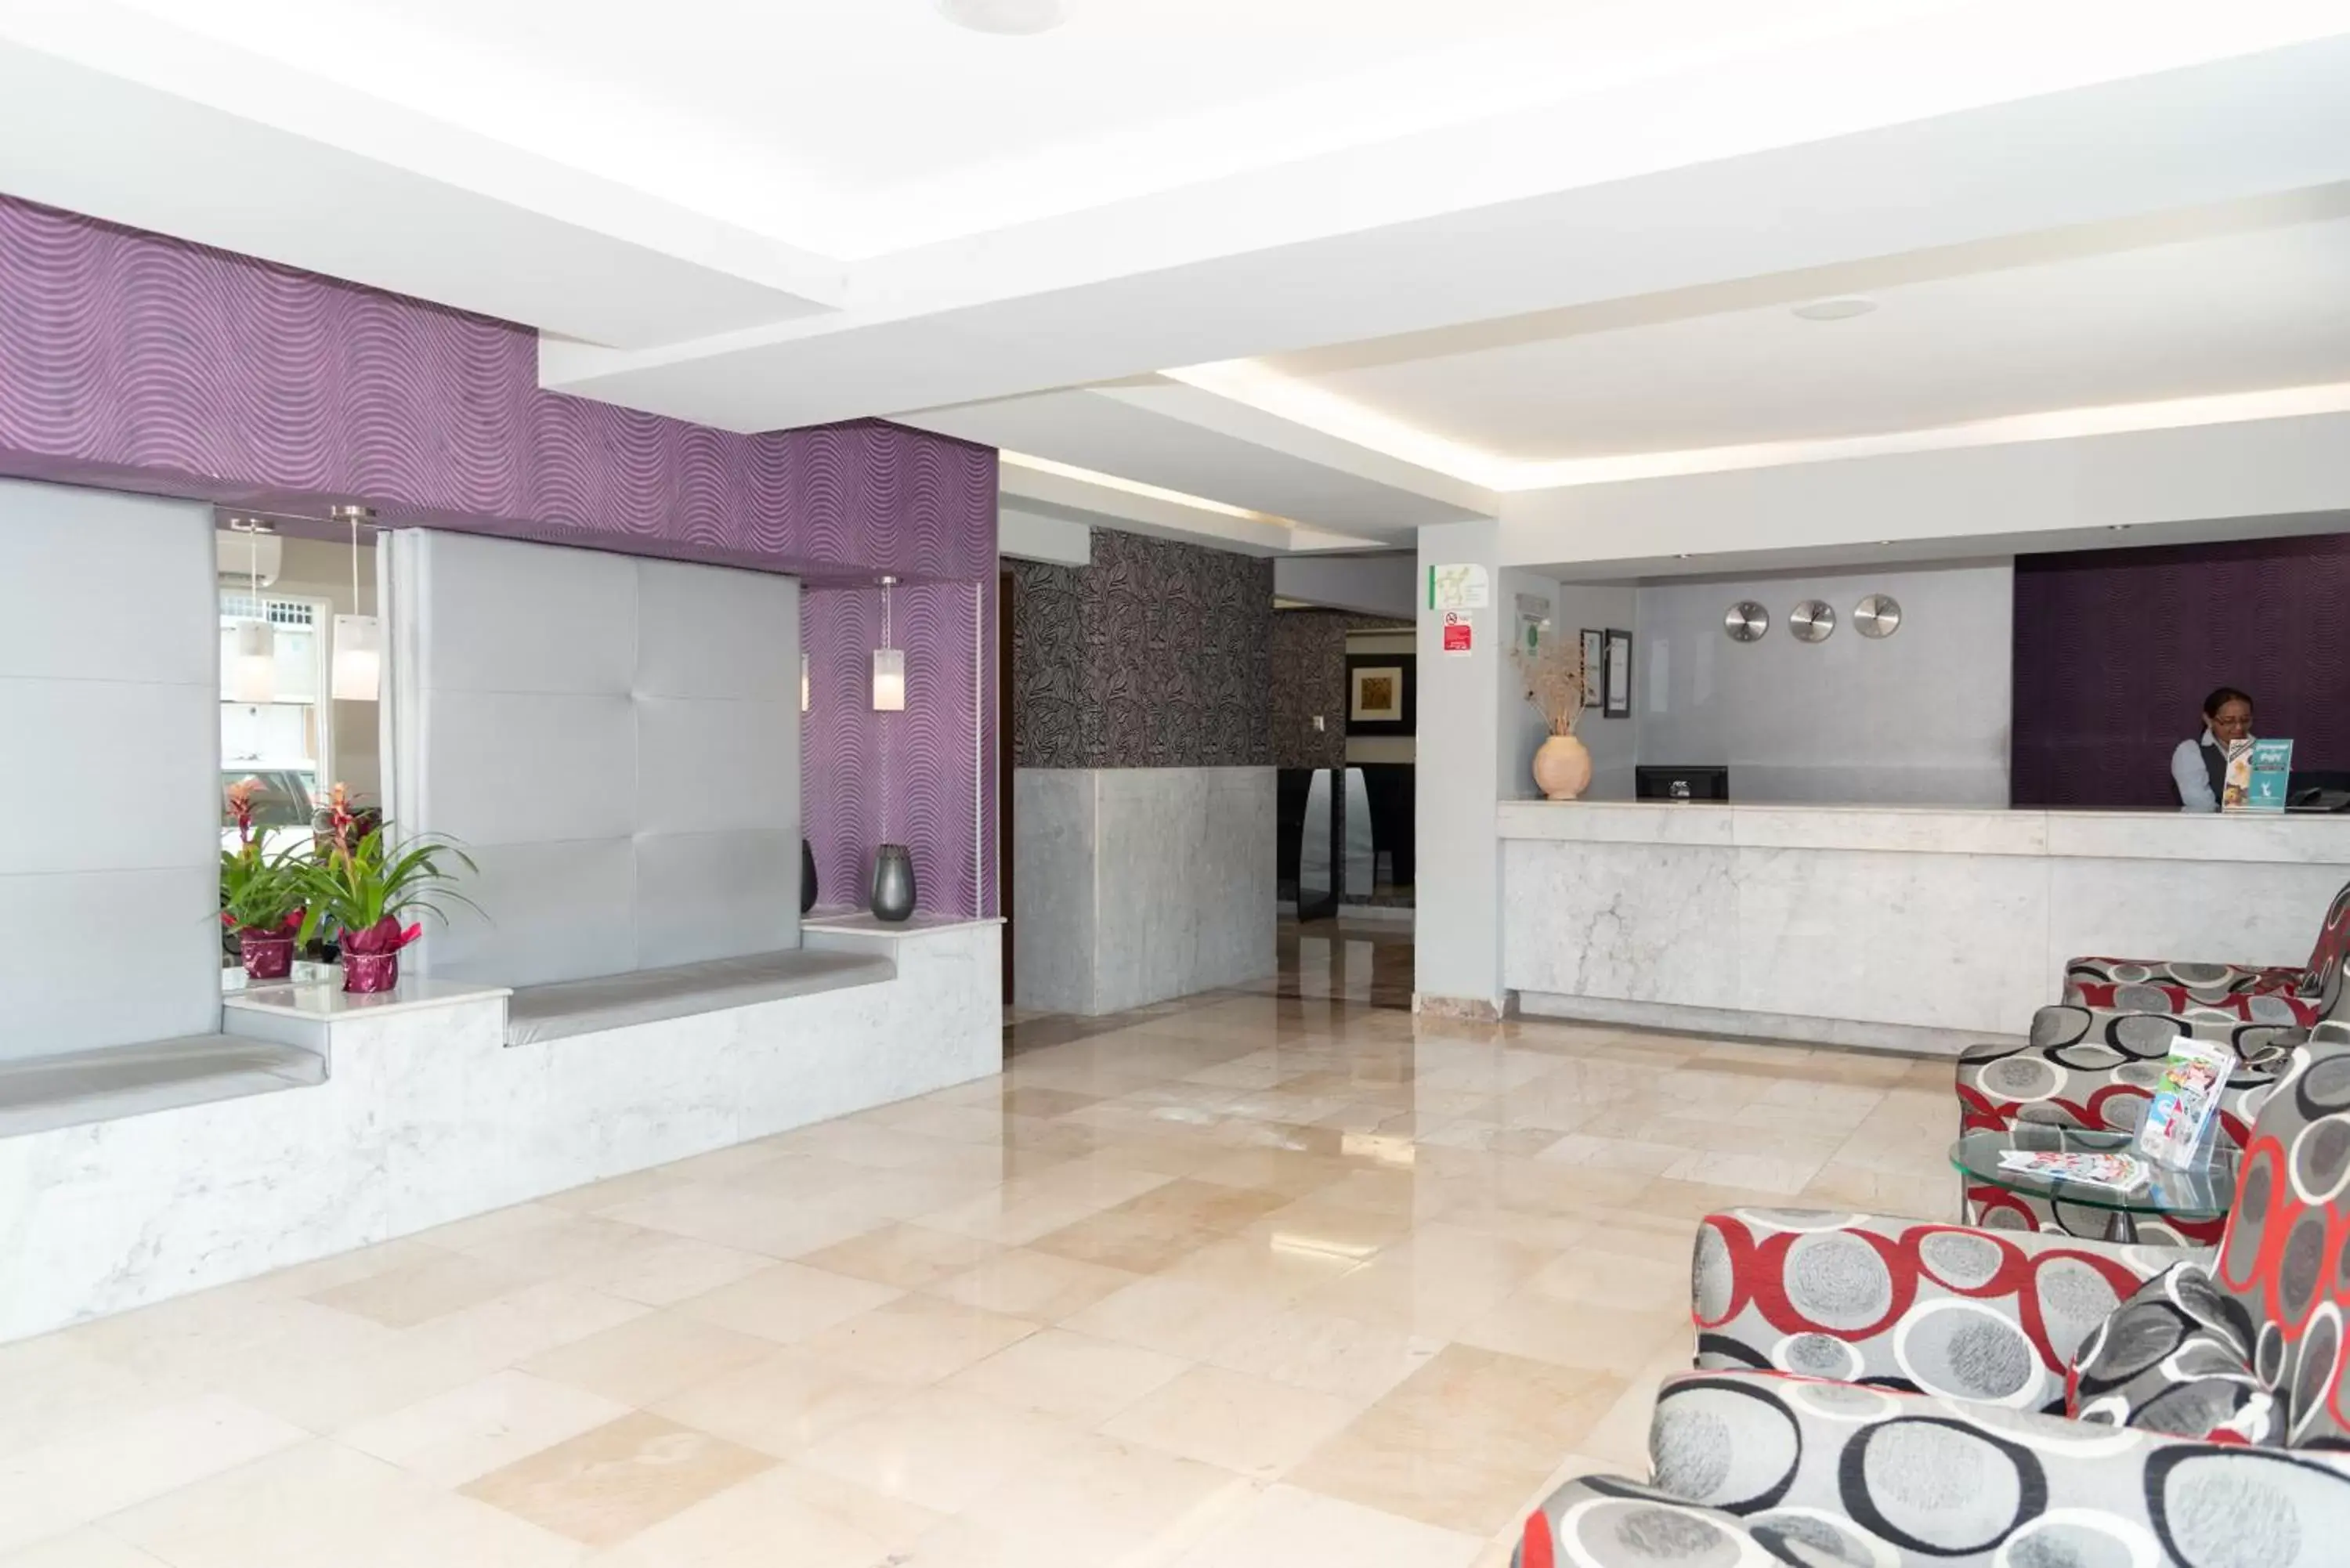 Lobby or reception, Lobby/Reception in Hotel Impala Centro